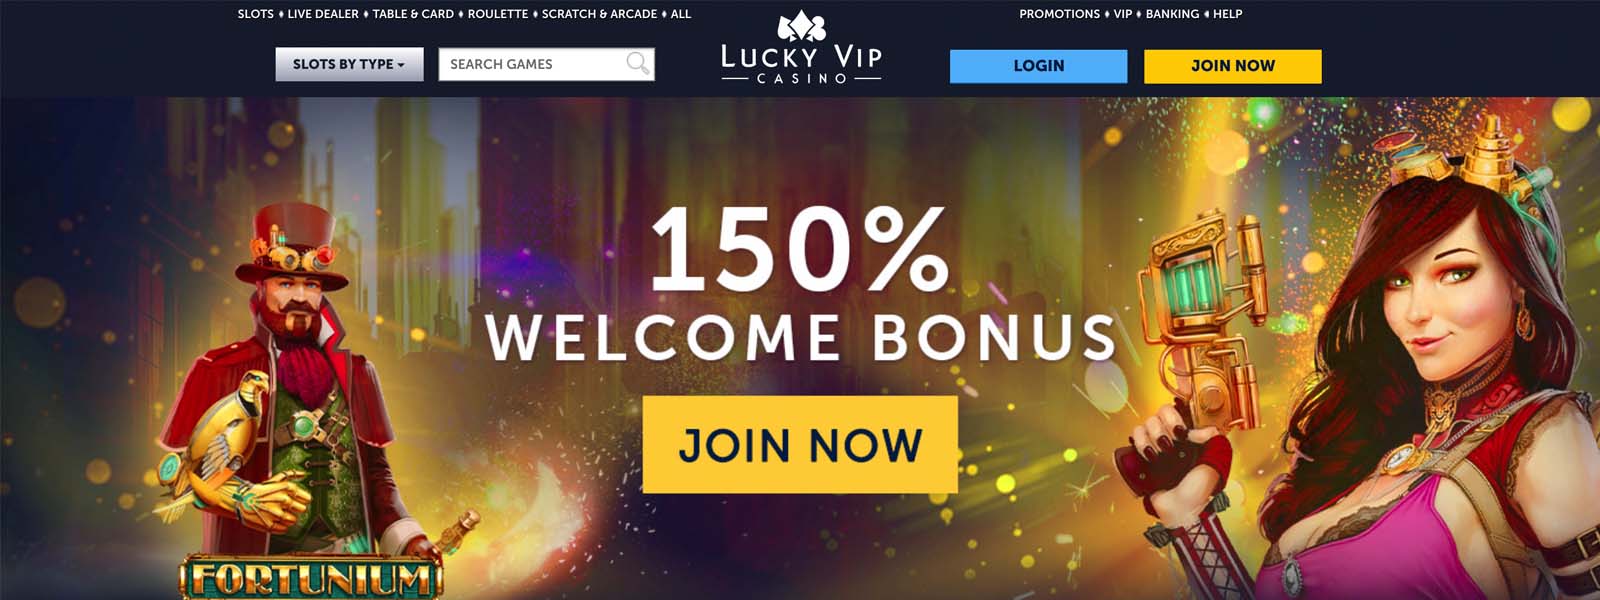 Luckyvip Exclusive Slots